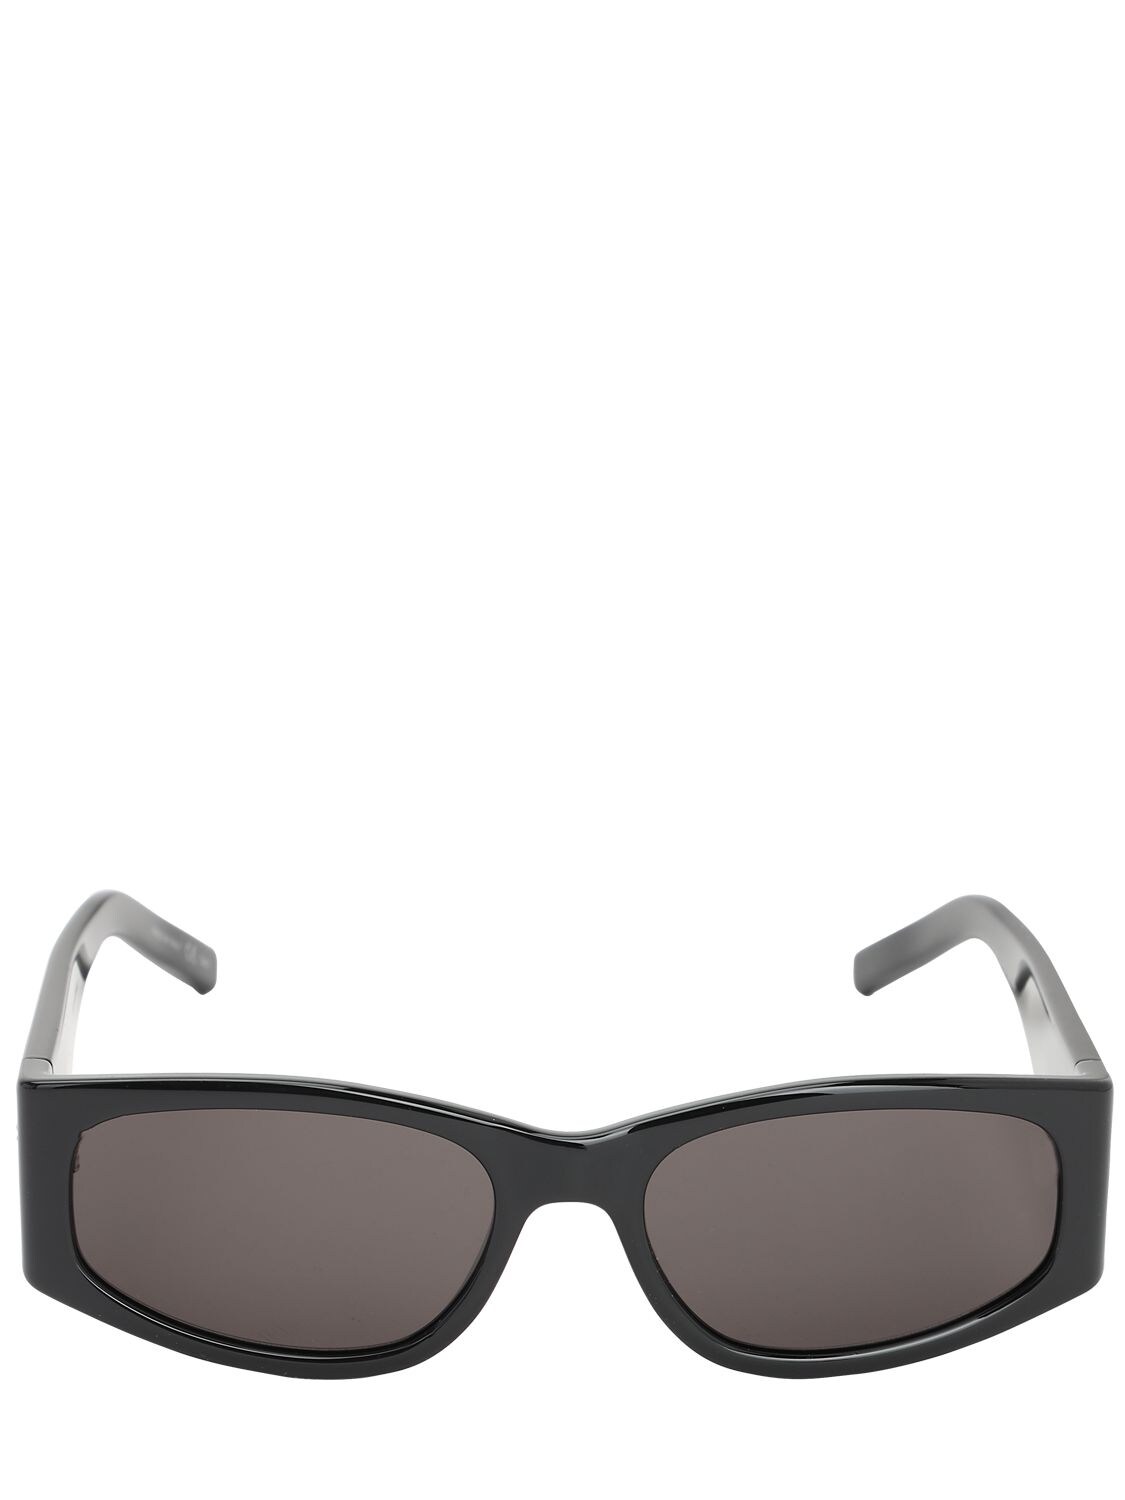 Saint Laurent Squared Acetate Mask Sunglasses In Black